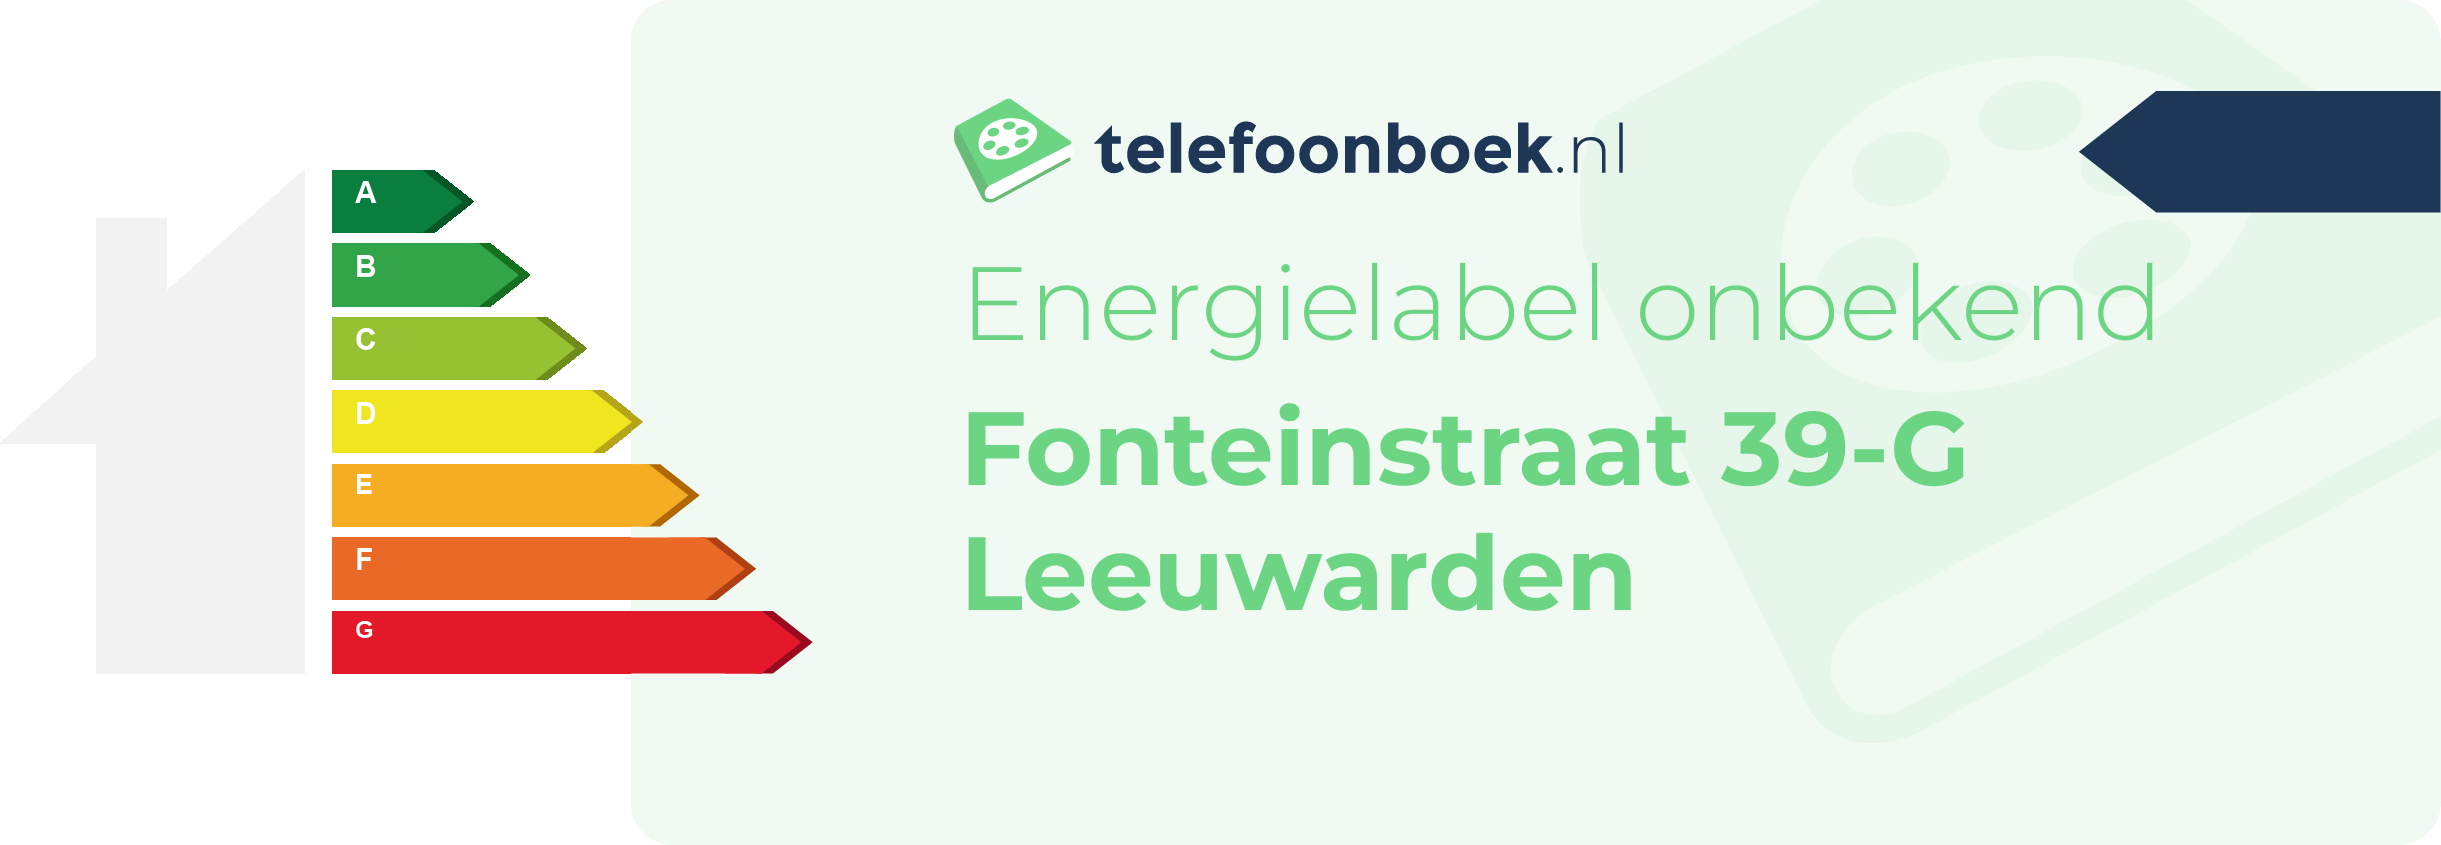 Energielabel Fonteinstraat 39-G Leeuwarden